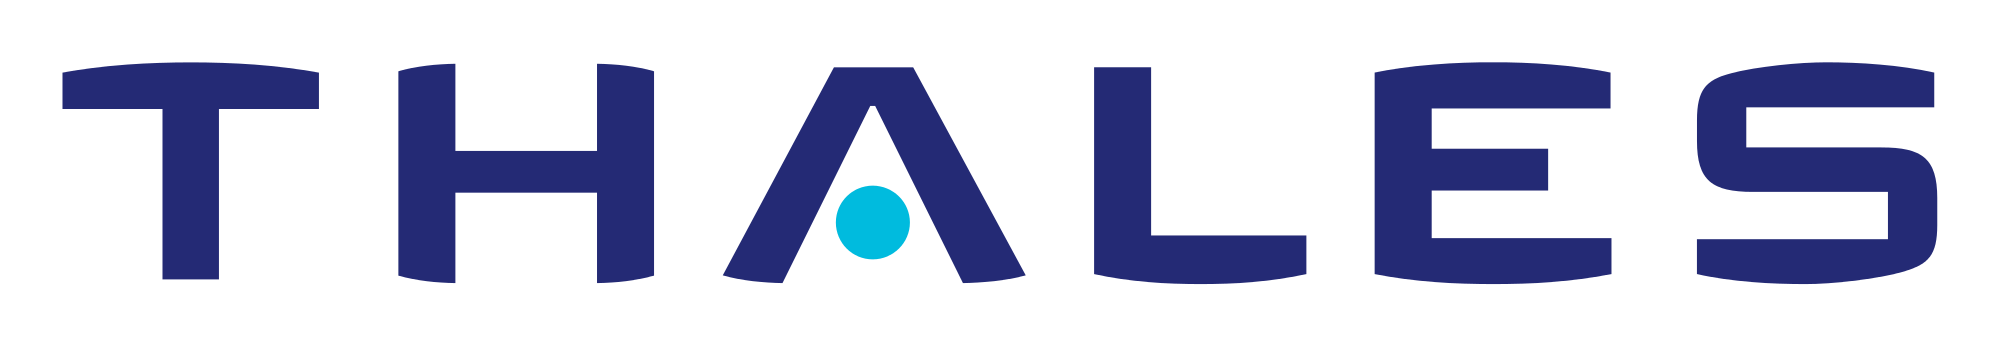 Thales-Logo